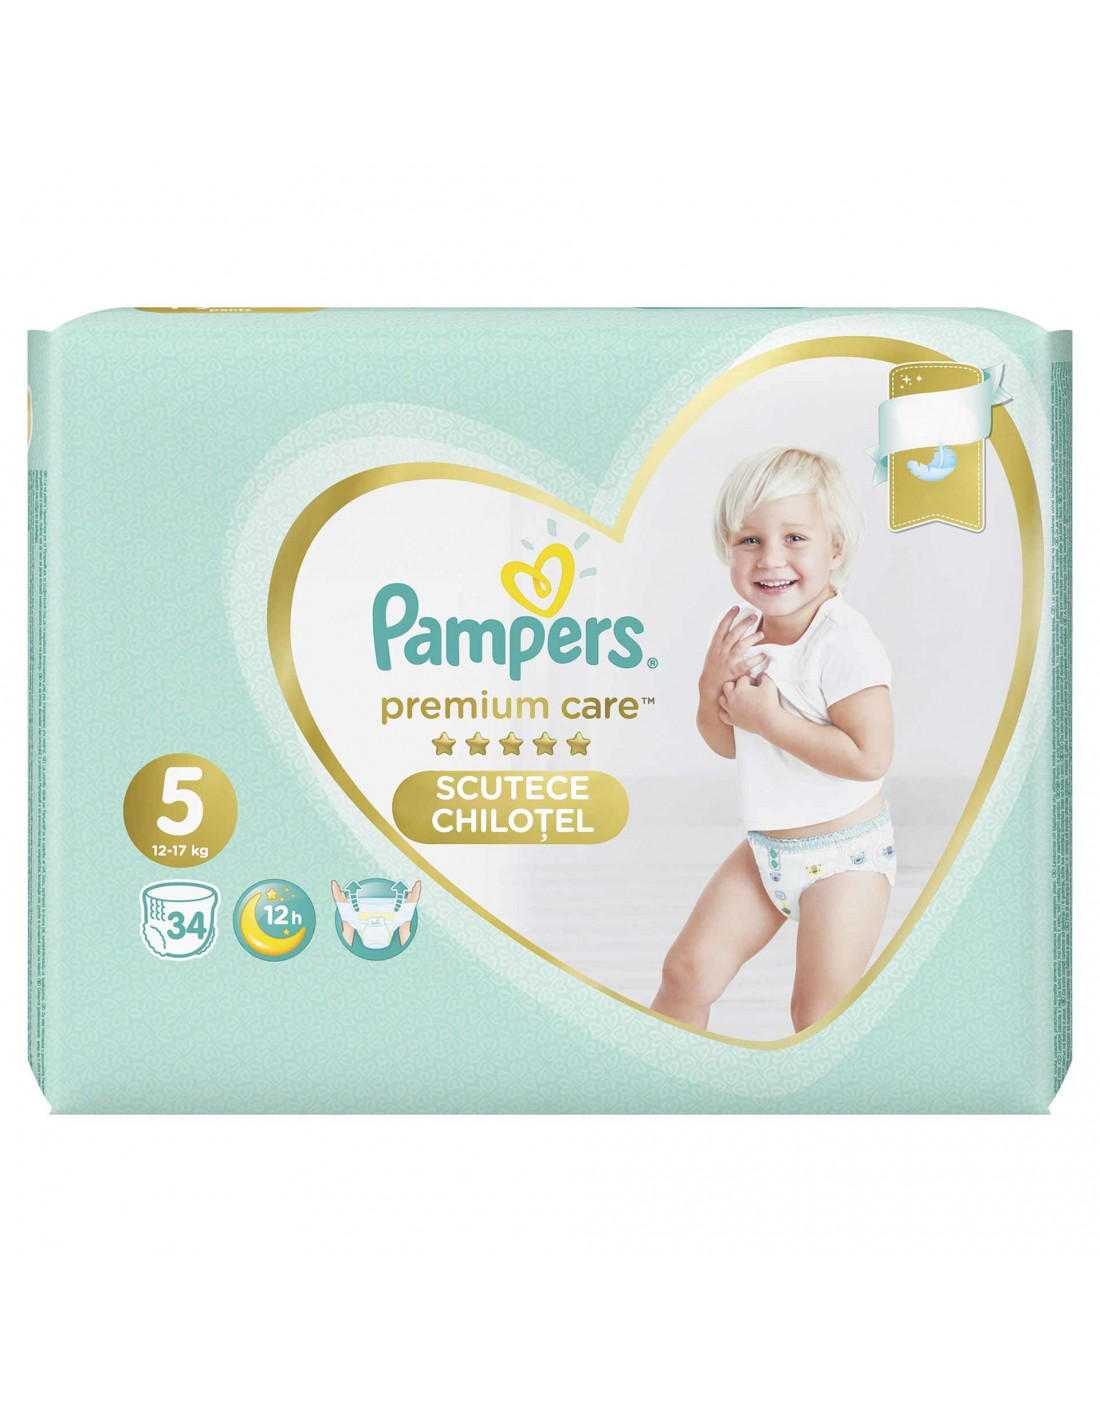 Scutece Pampers chilotei Premium Care, NR 5, 12-17 kg, 34 bucati - SCUTECE  - PAMPERS